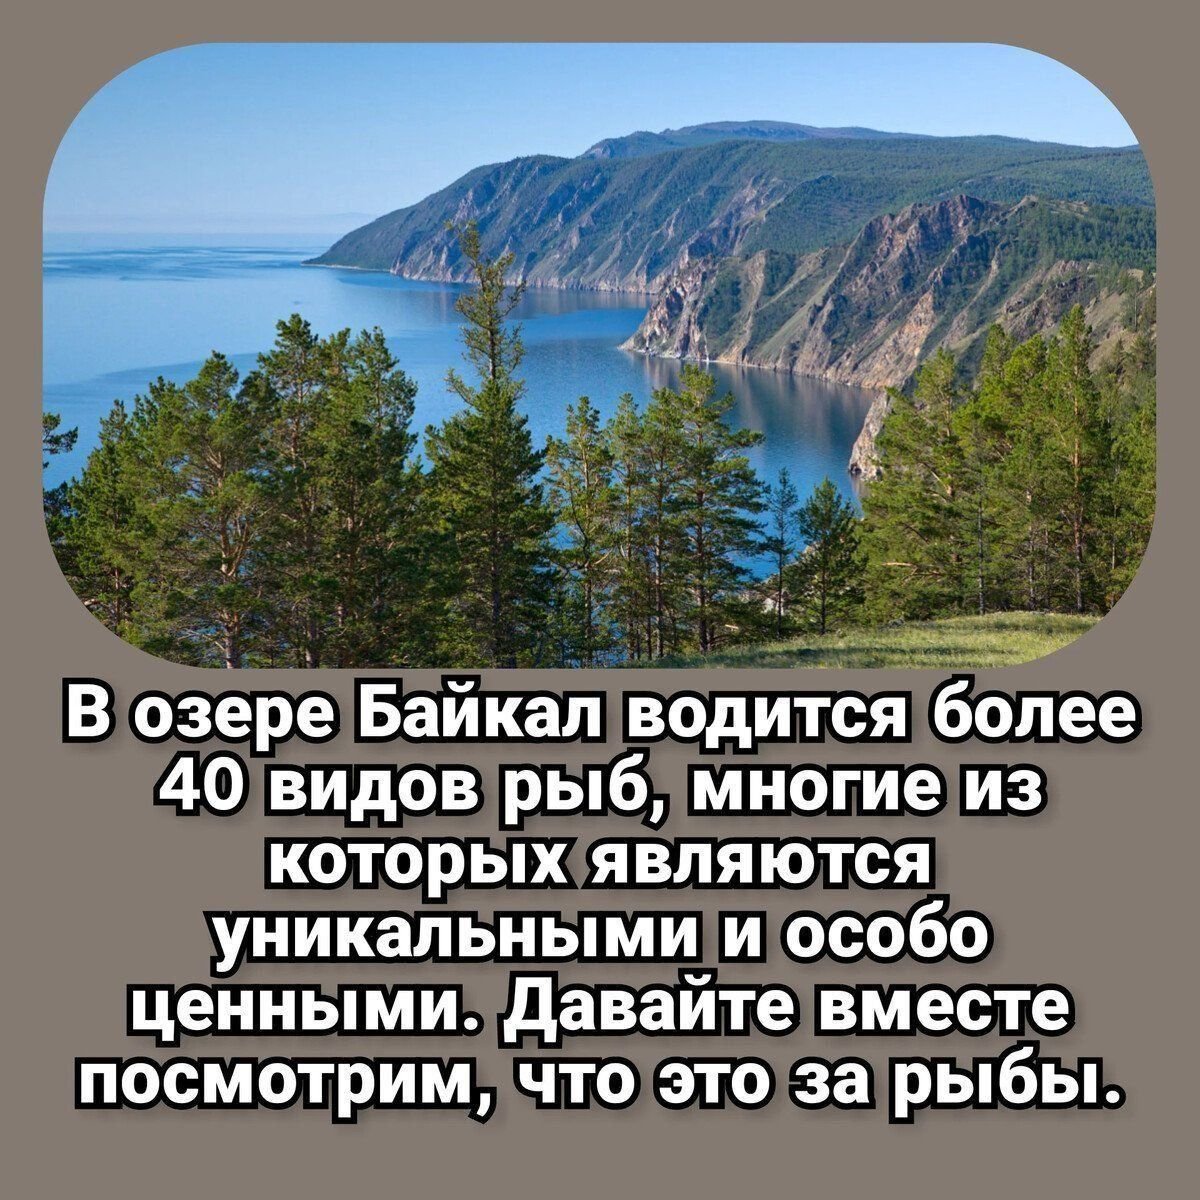 Байкал пресноводное озеро. Кто обитает в озере Байкал. Самое большое озеро в России. Рыбы Байкала. Самое крупное пресное озеро в мире